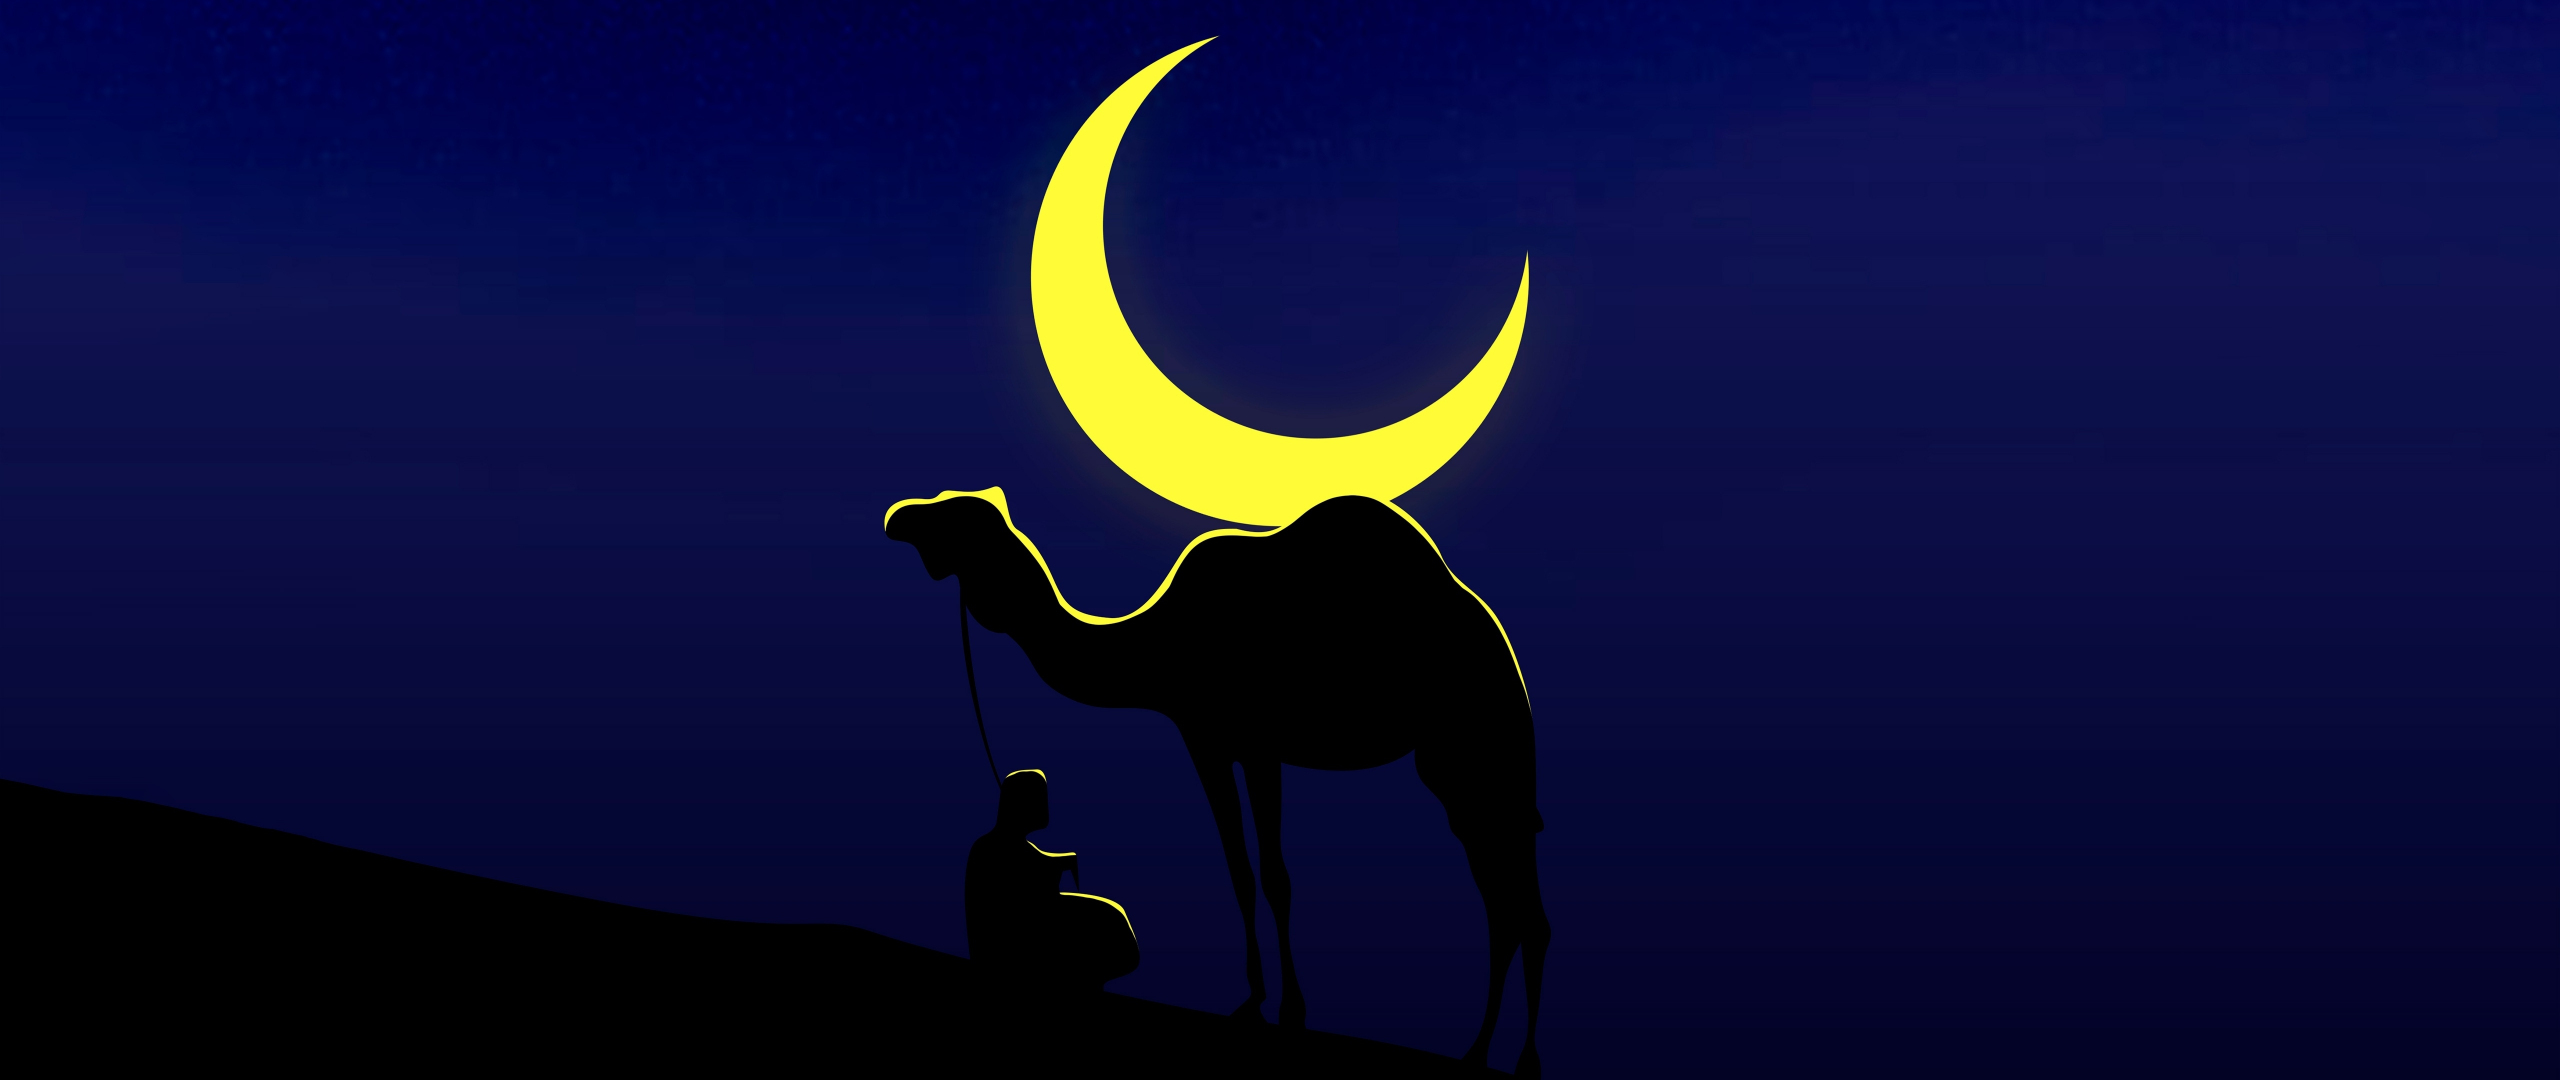 Camel and his master, moon, minimal, 2560x1080 wallpaper